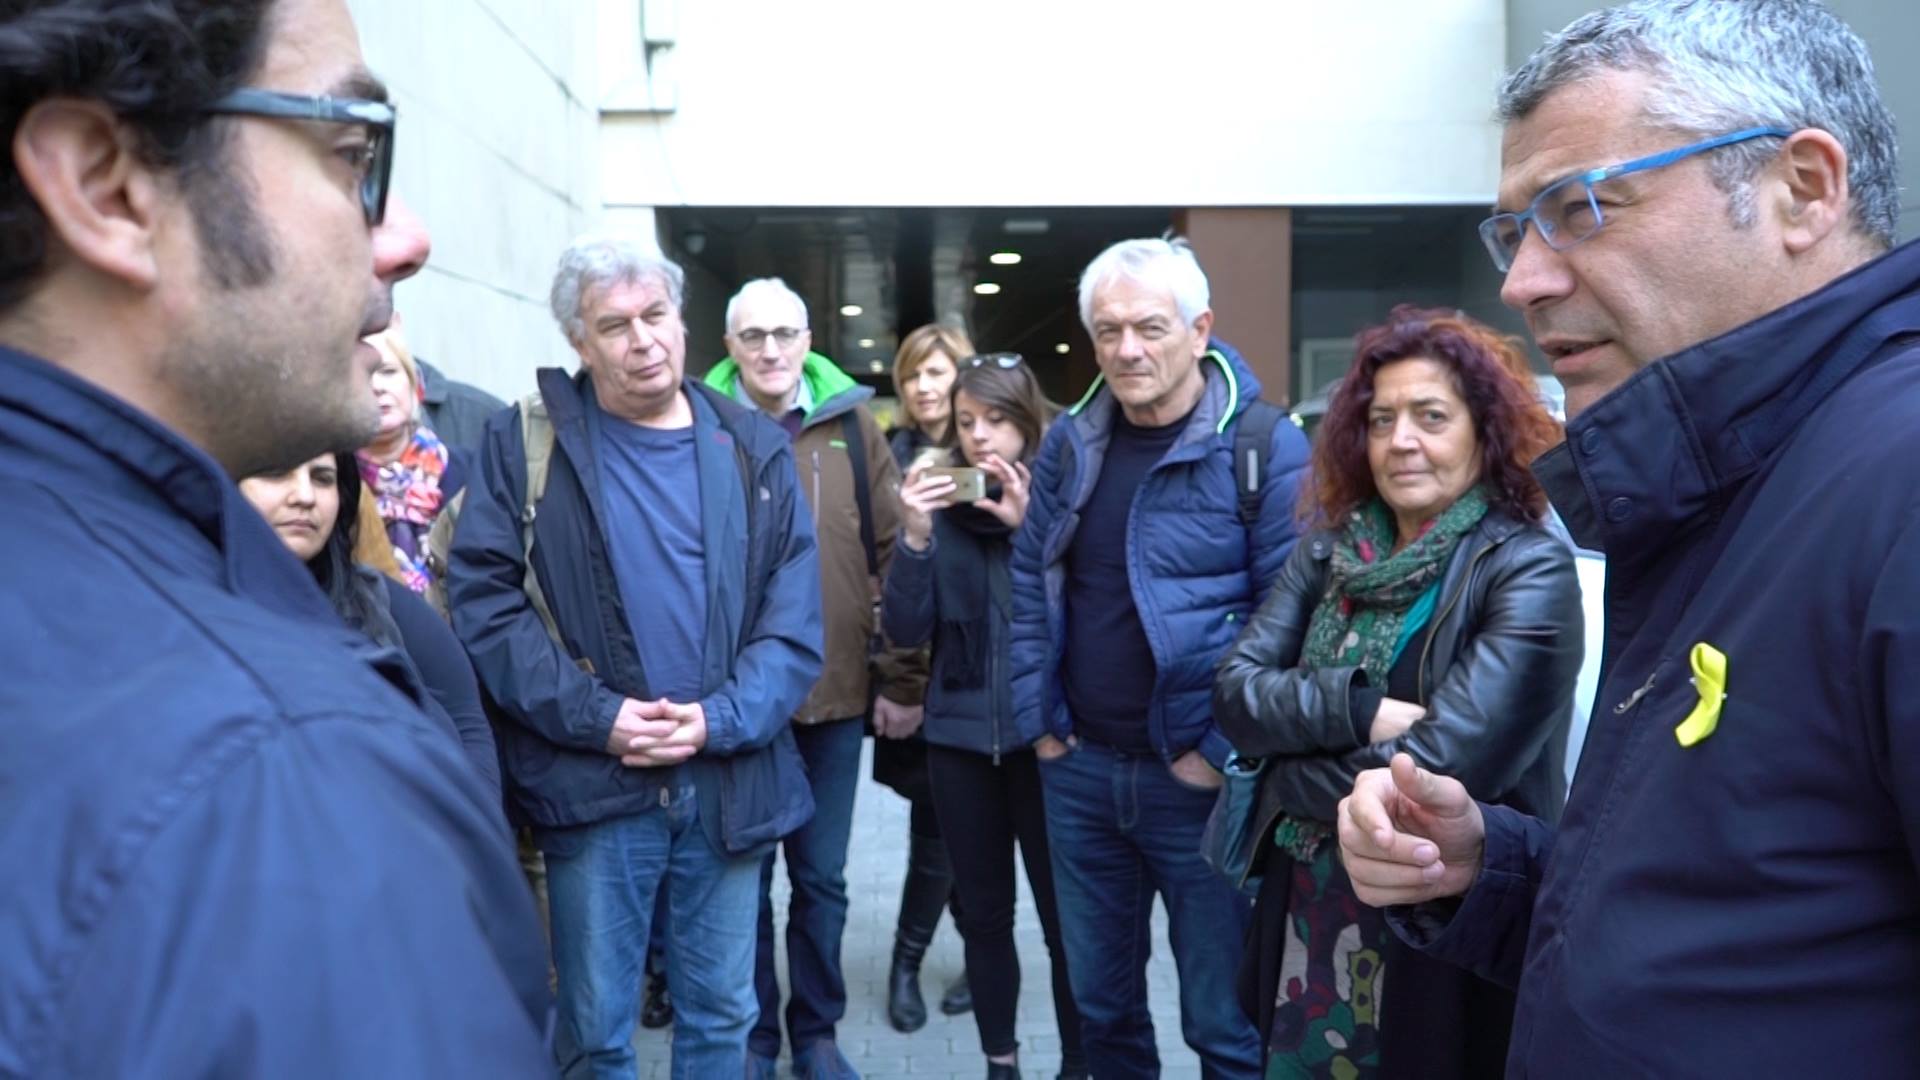 Barcellona (marzo 2018), il nostro incontro con gli esponenti dell'Esquerra Republicana